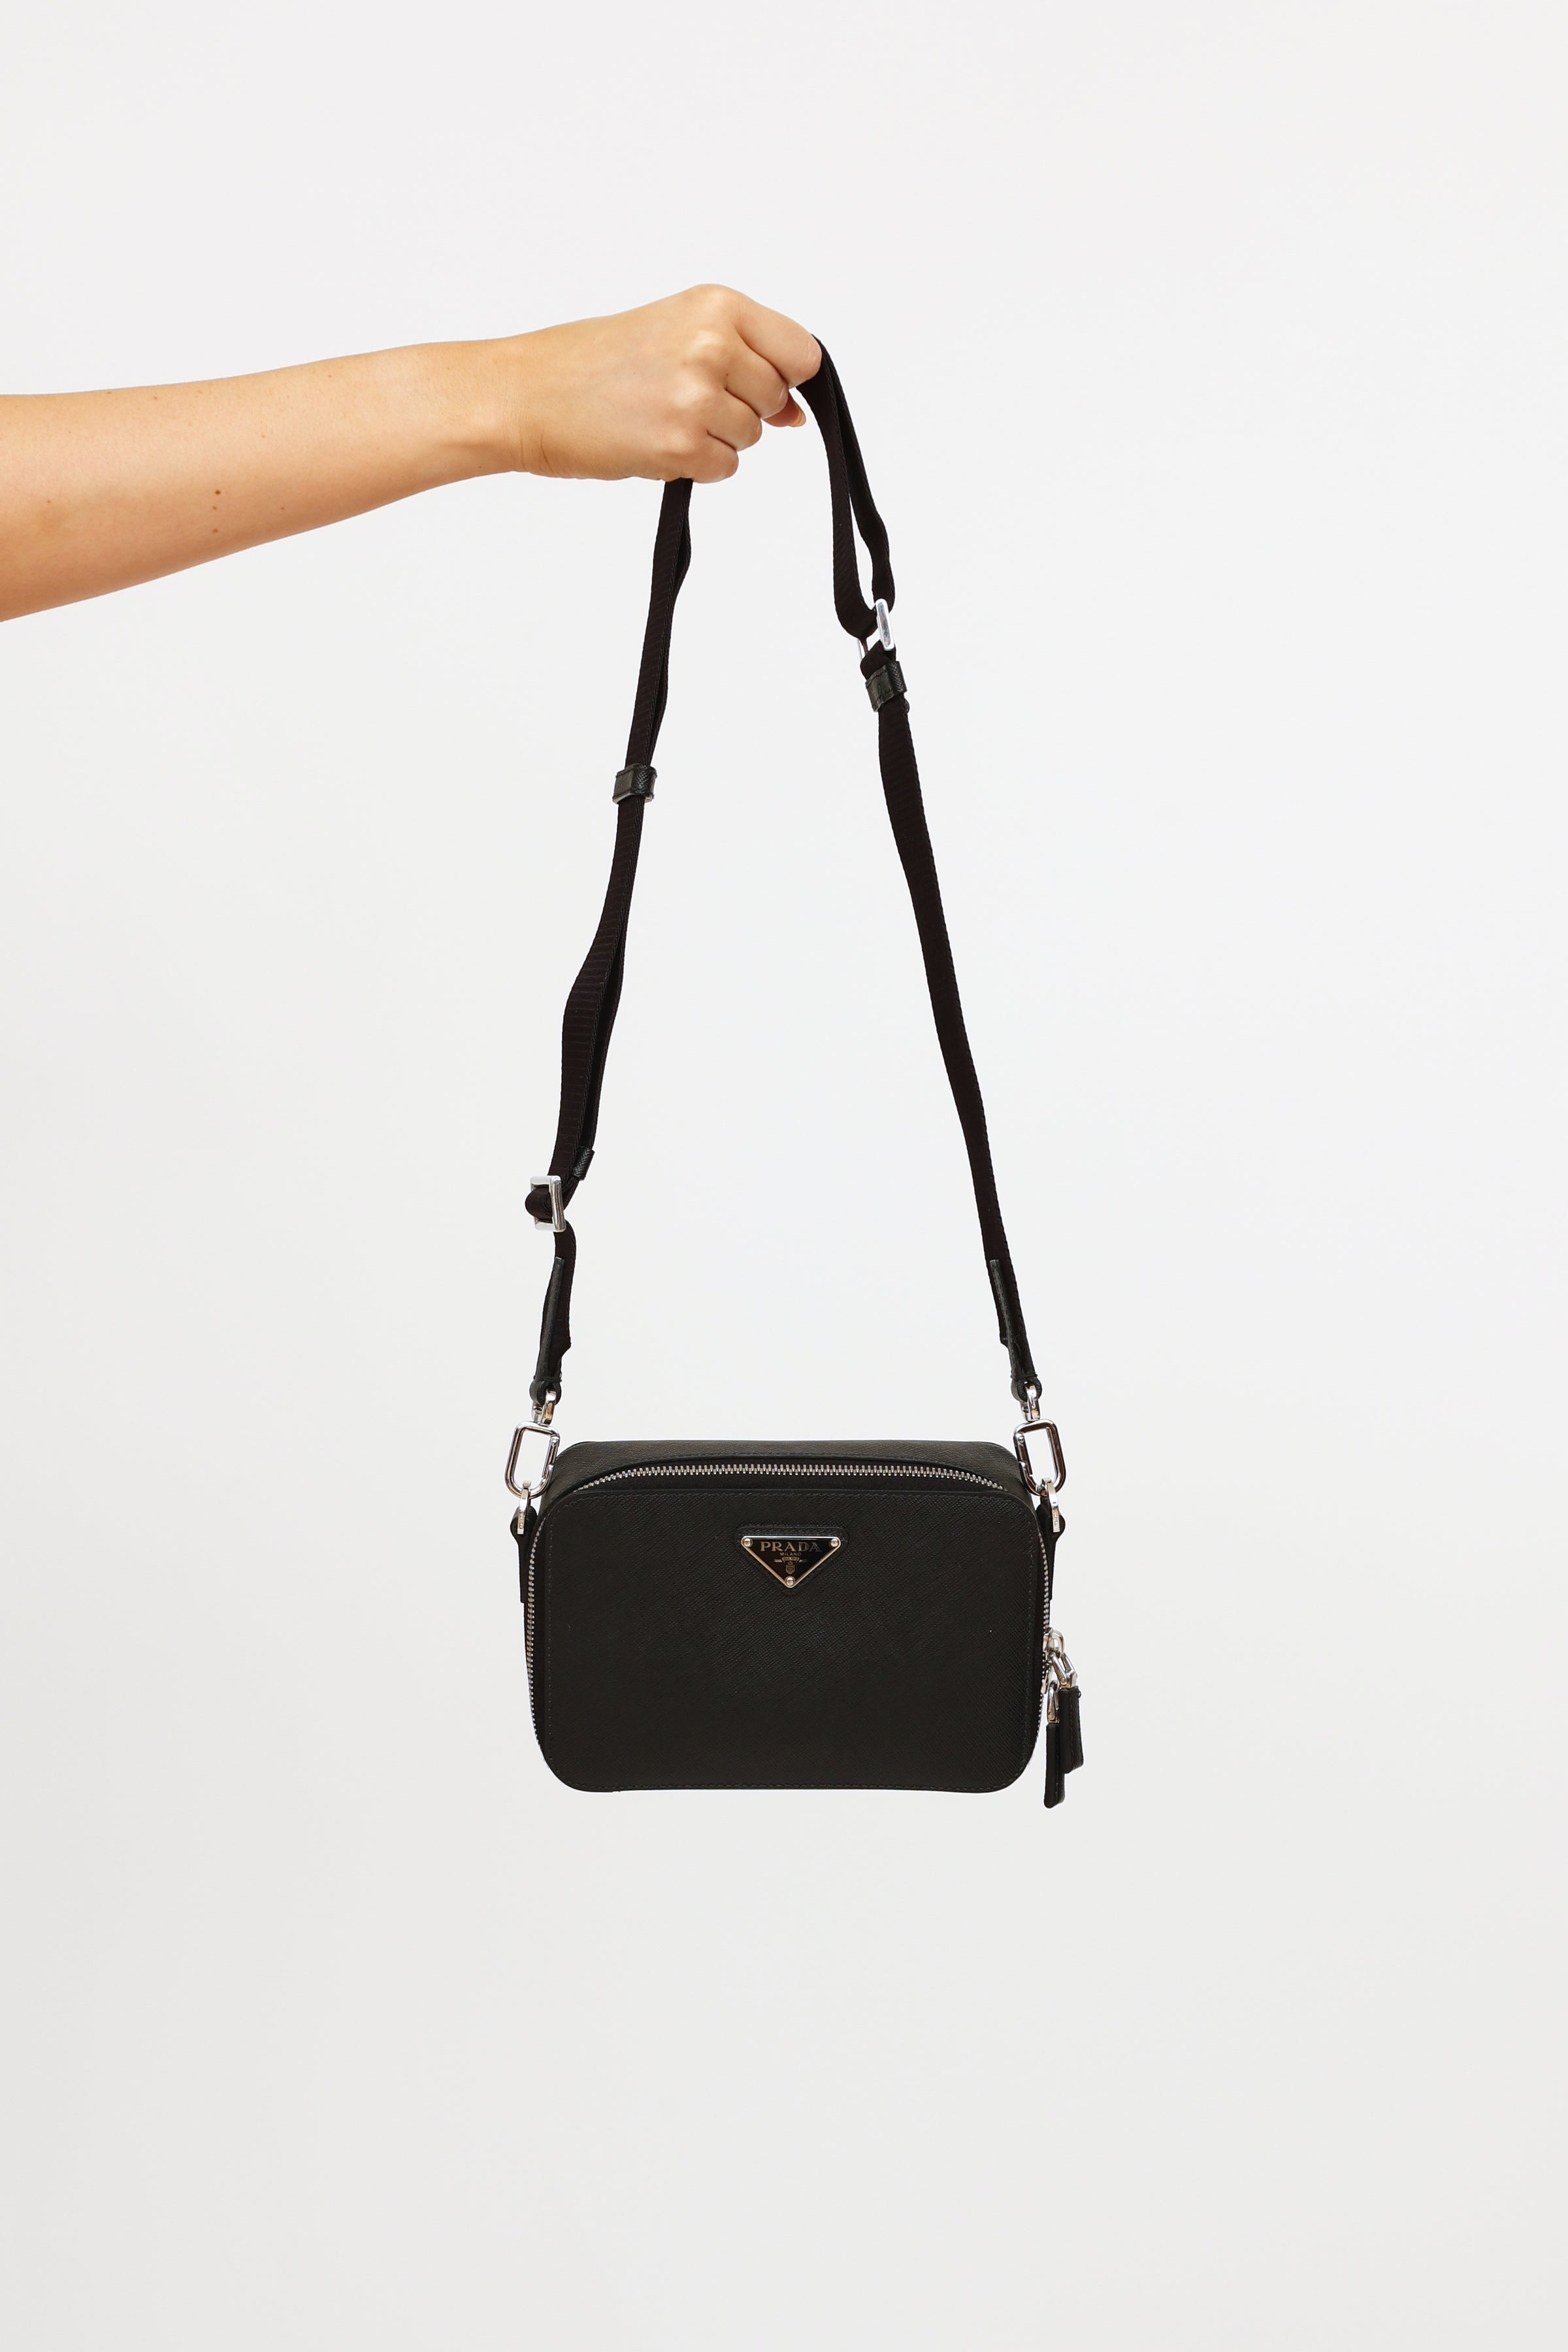 Prada // Black Monochrome Saffiano Medium Handbag – VSP Consignment